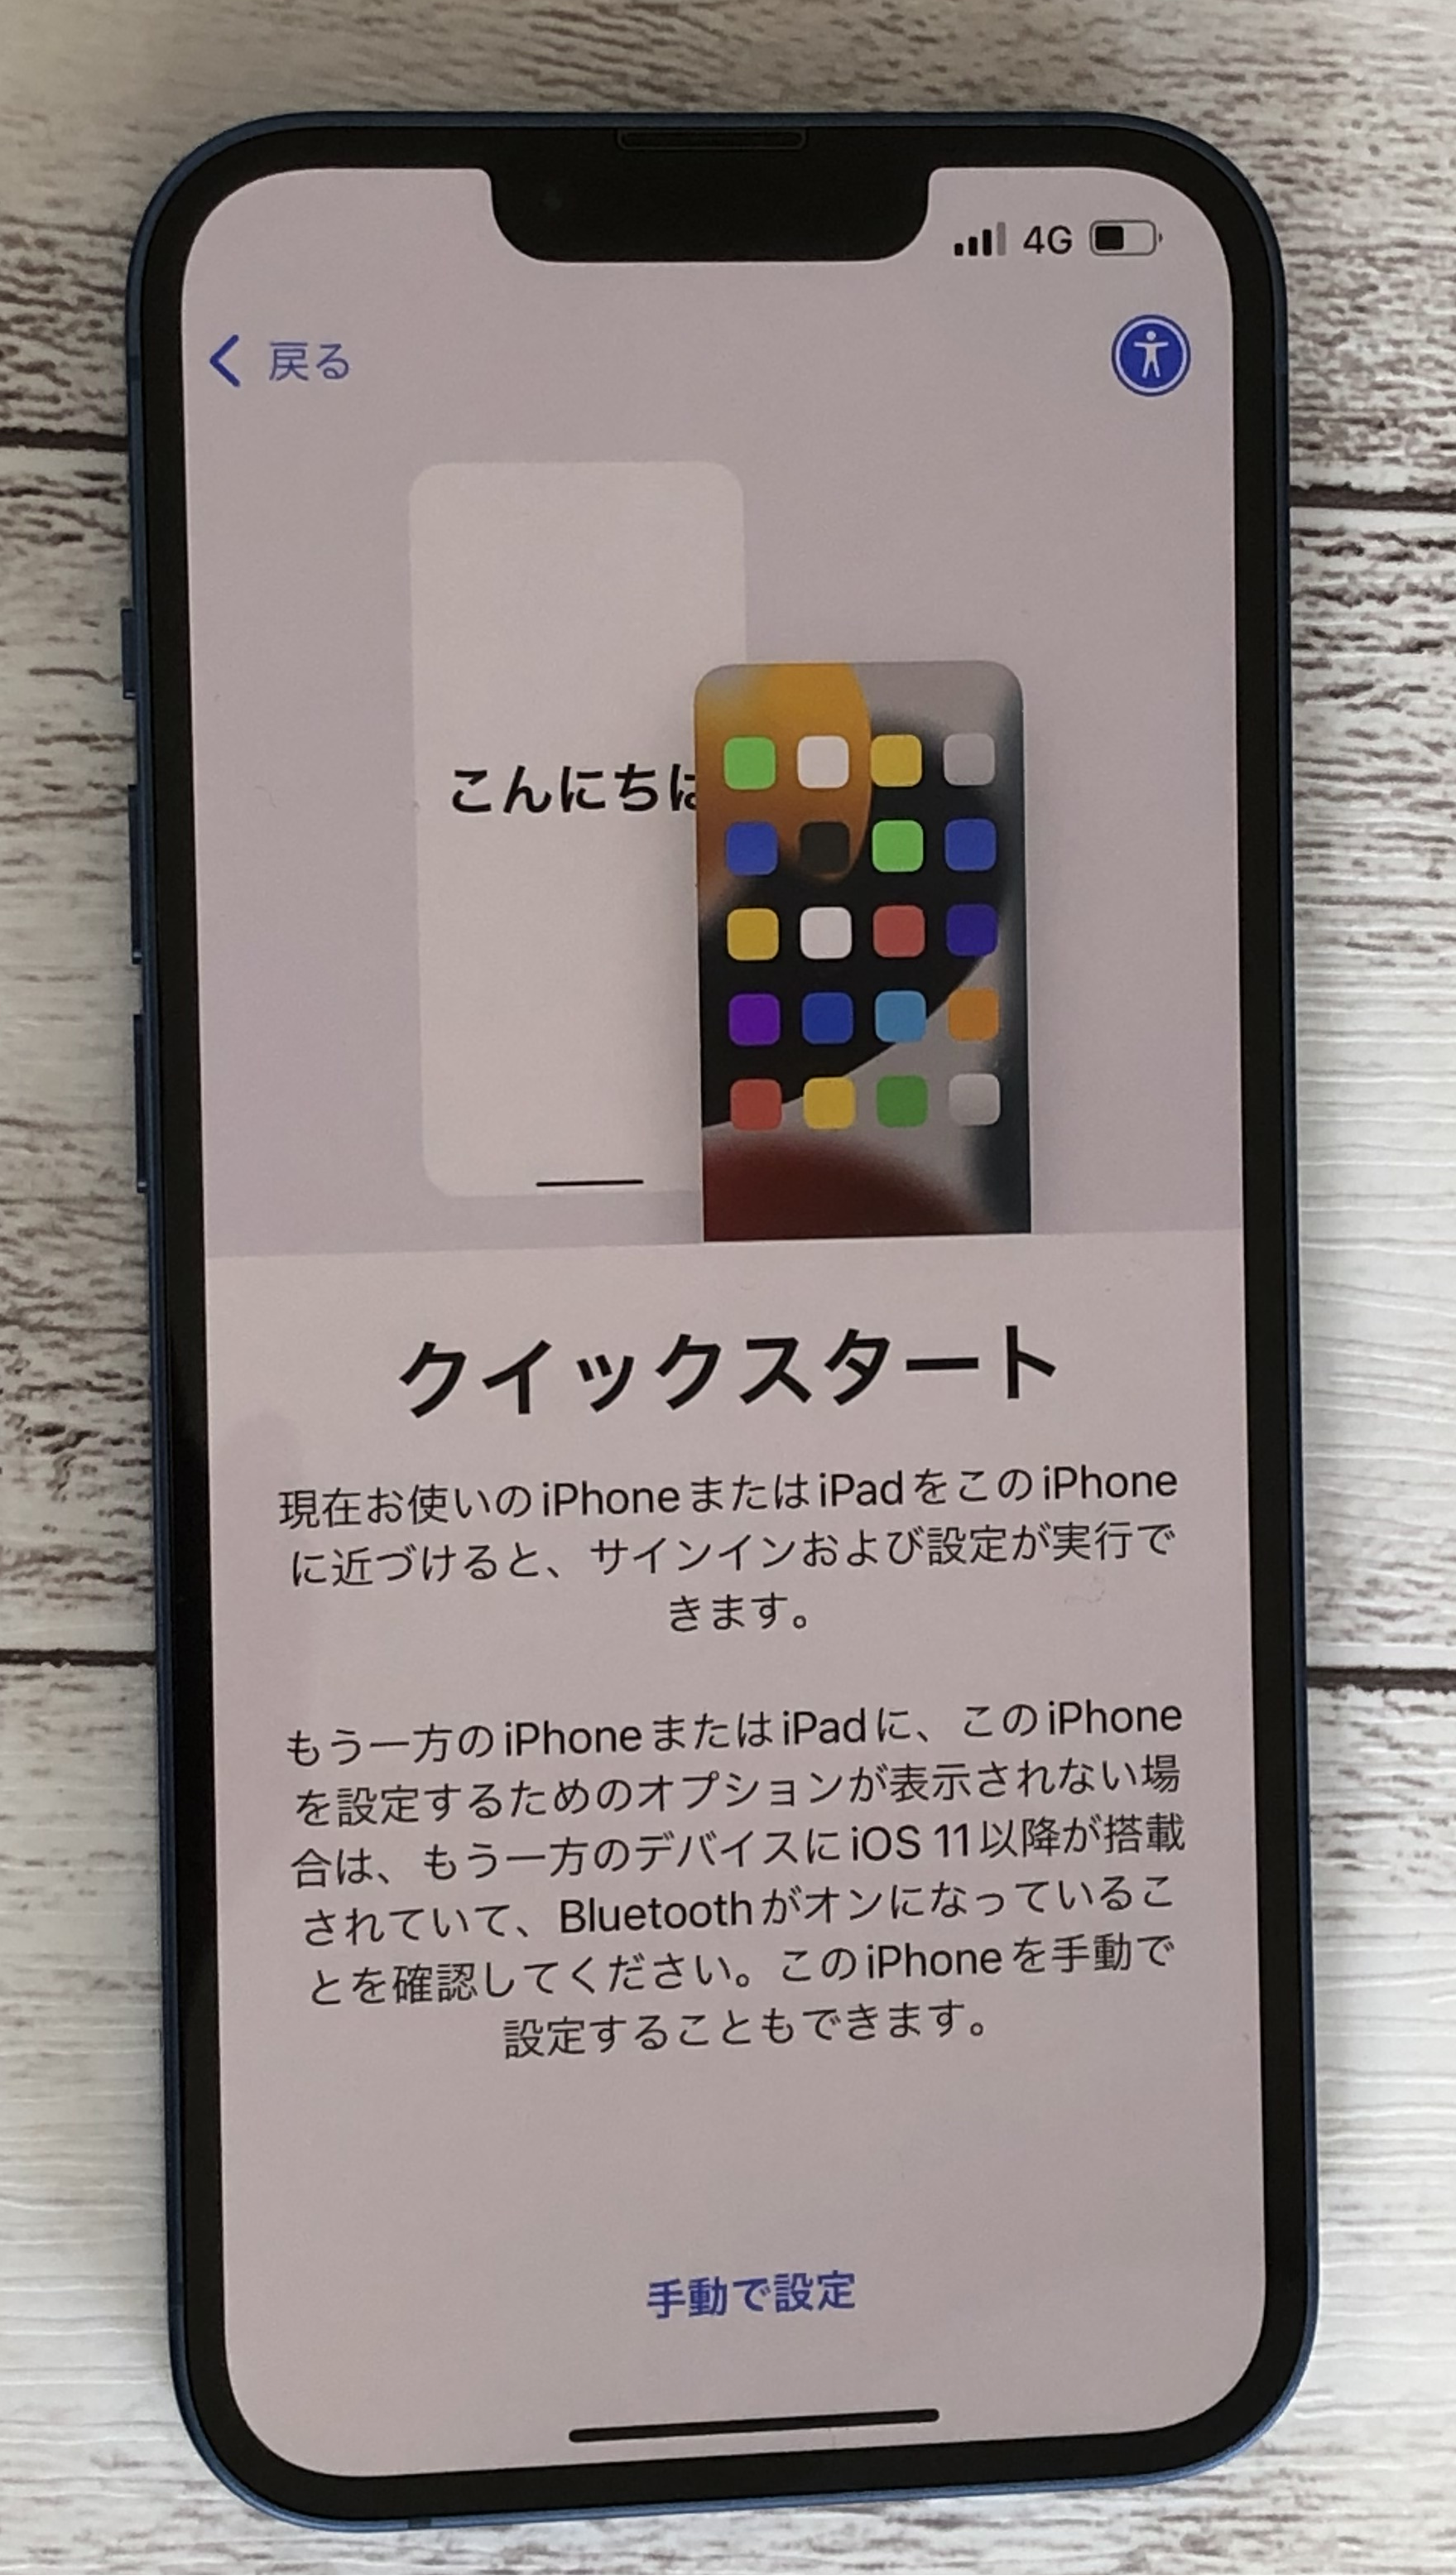 iphone-quickstart-kaisigamen